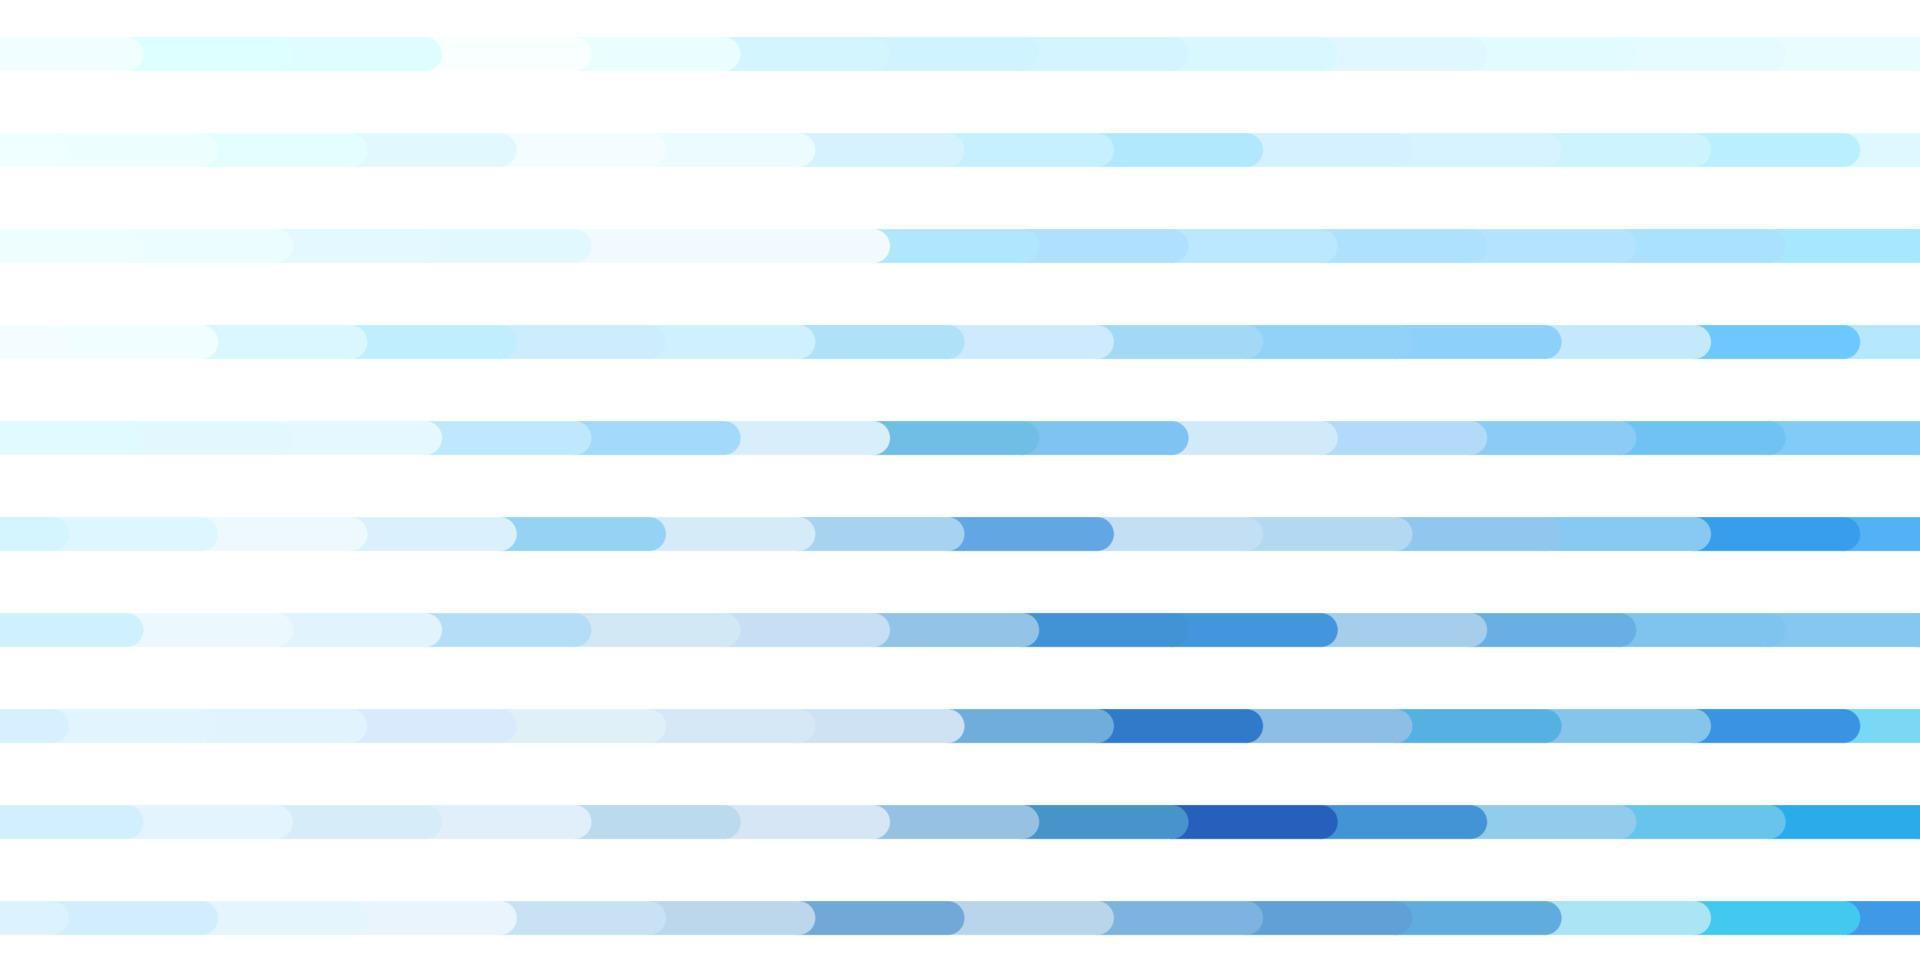 hellblauer Vektorhintergrund mit Linien. vektor